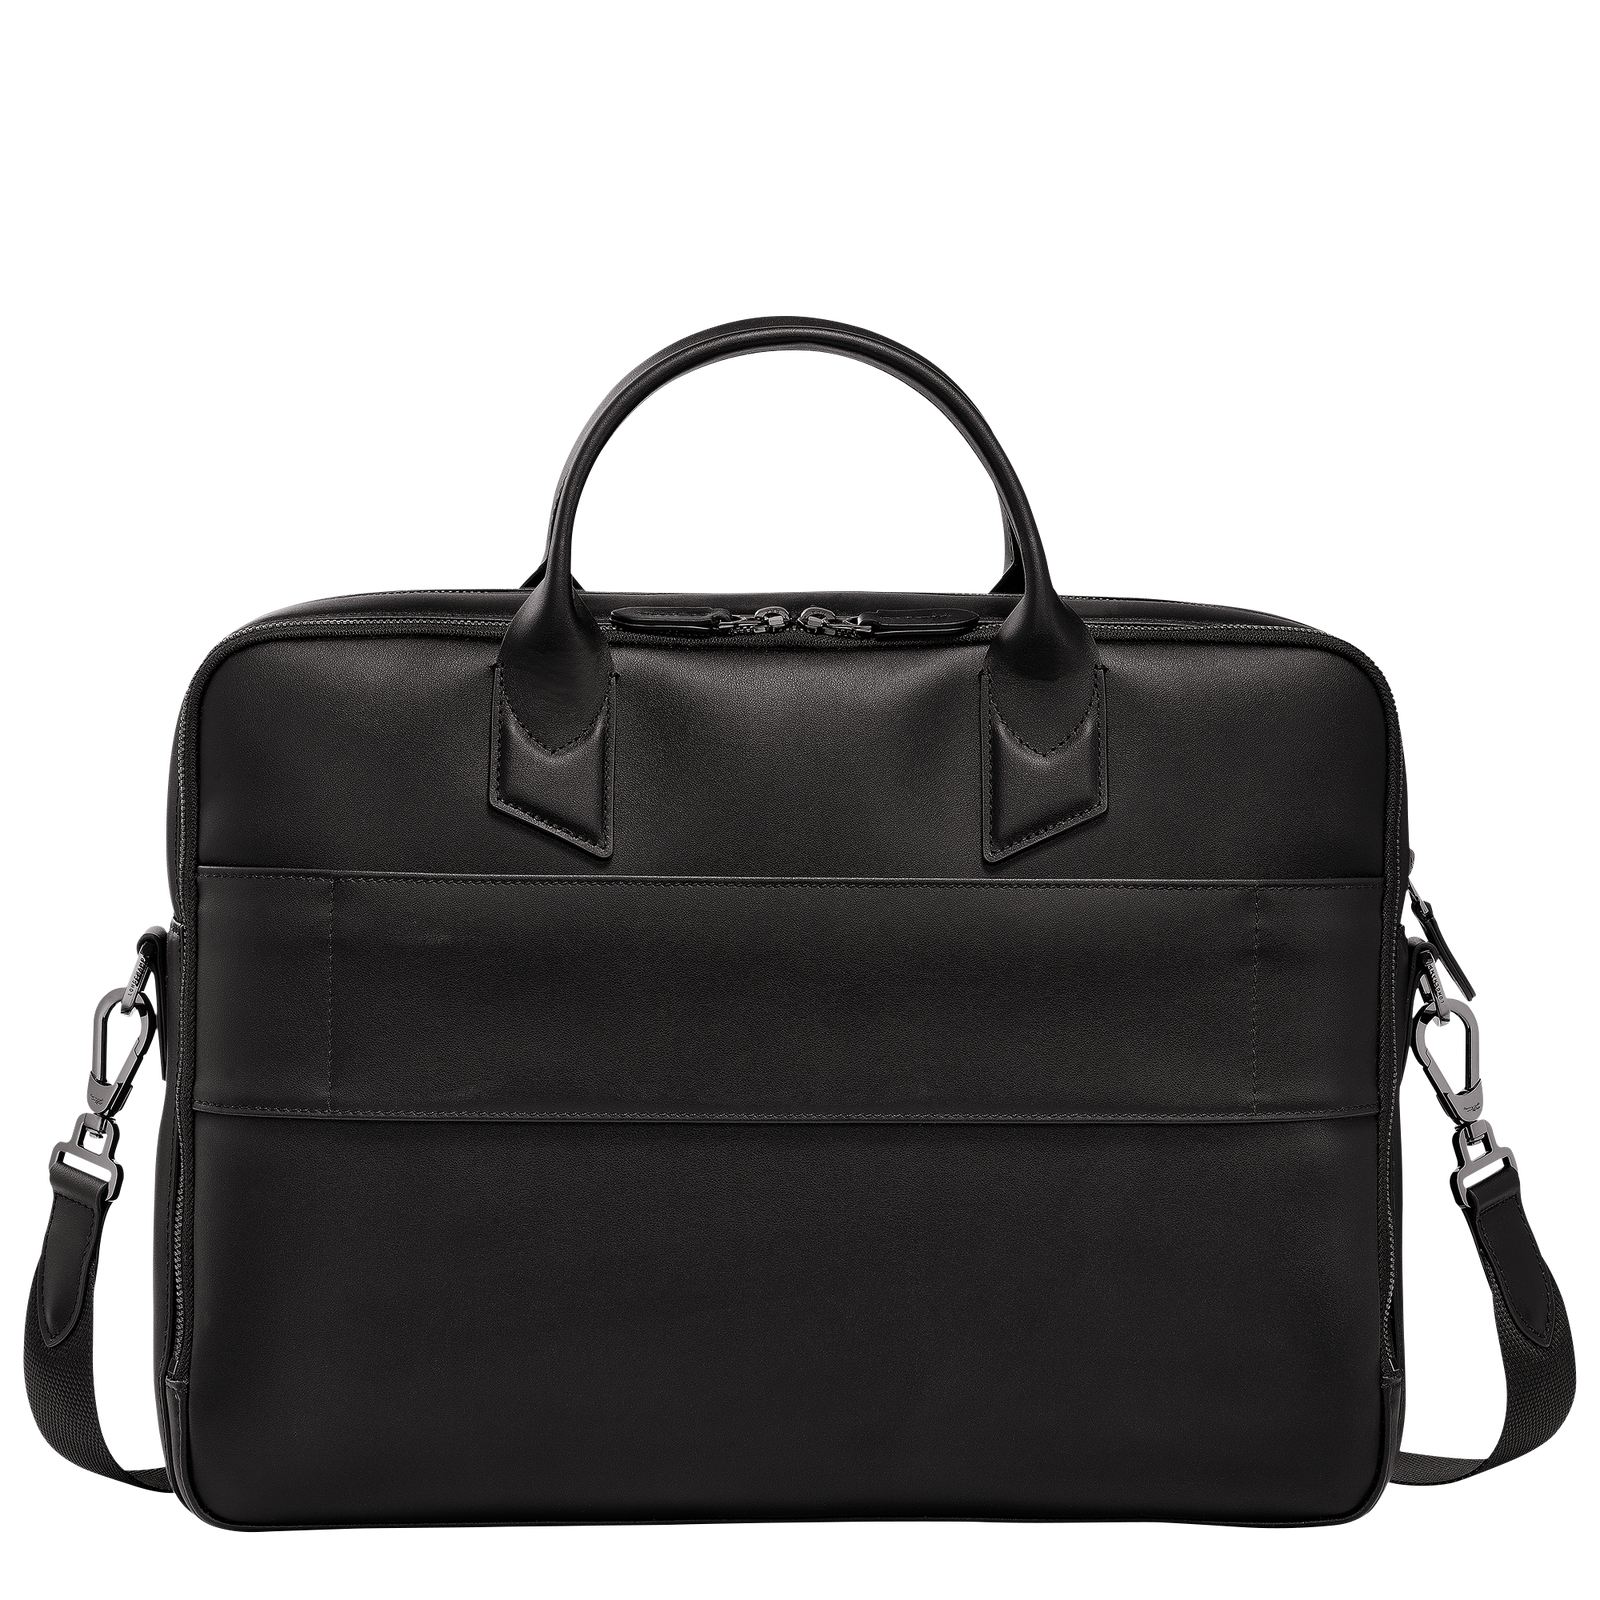 Longchamp sur Seine M Briefcase Black - Leather | Longchamp US